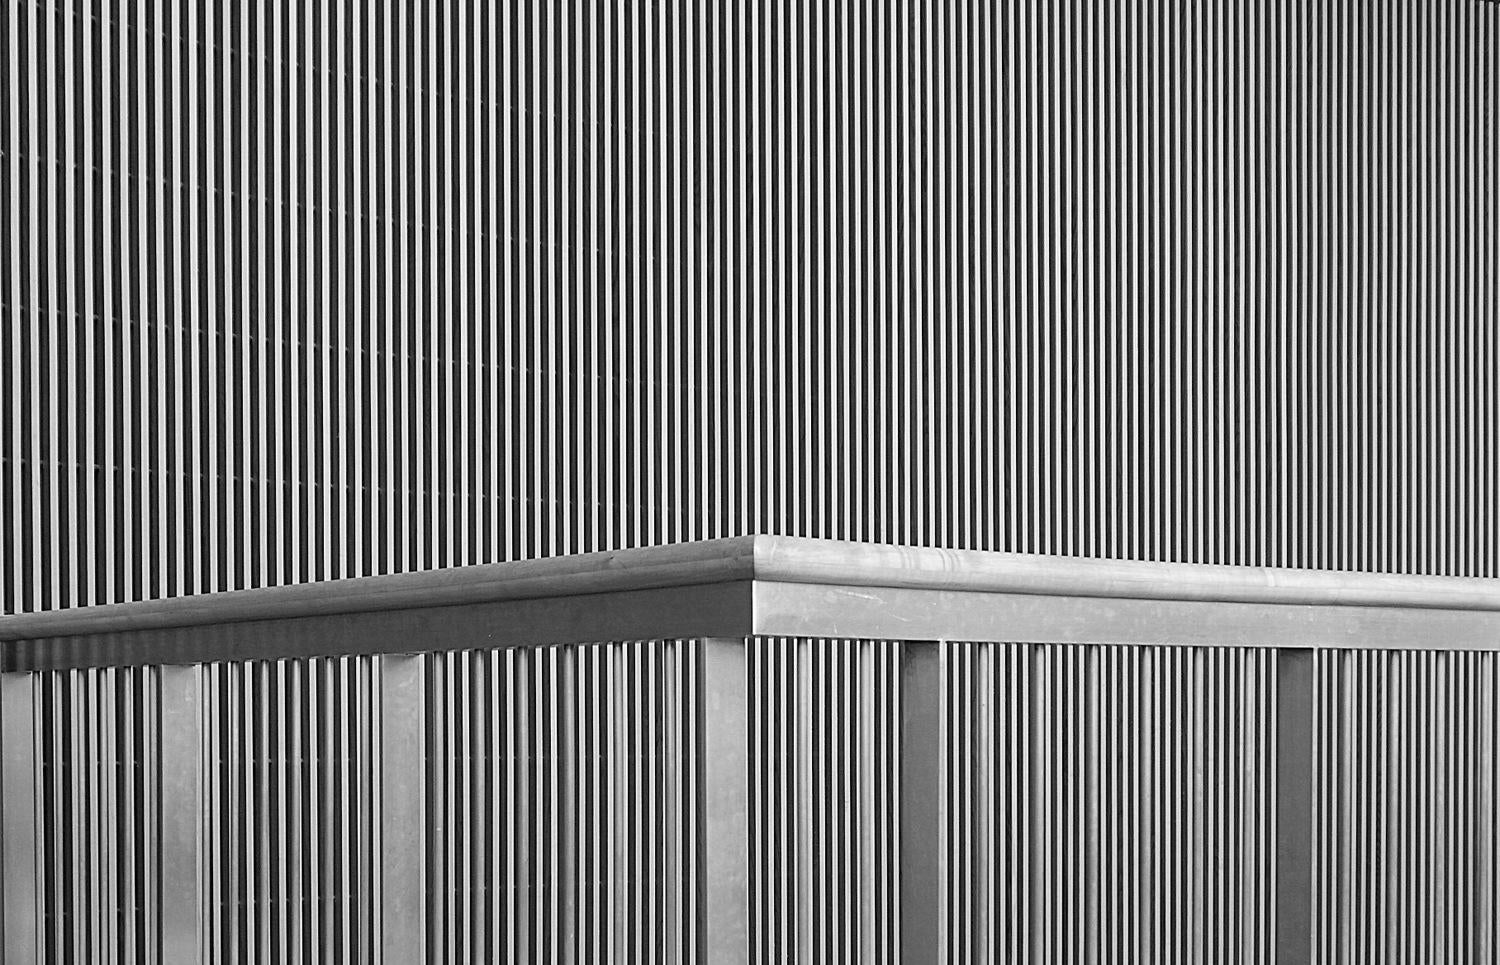 Richard S. Chow Black and White Photograph – Zwischen den Linien